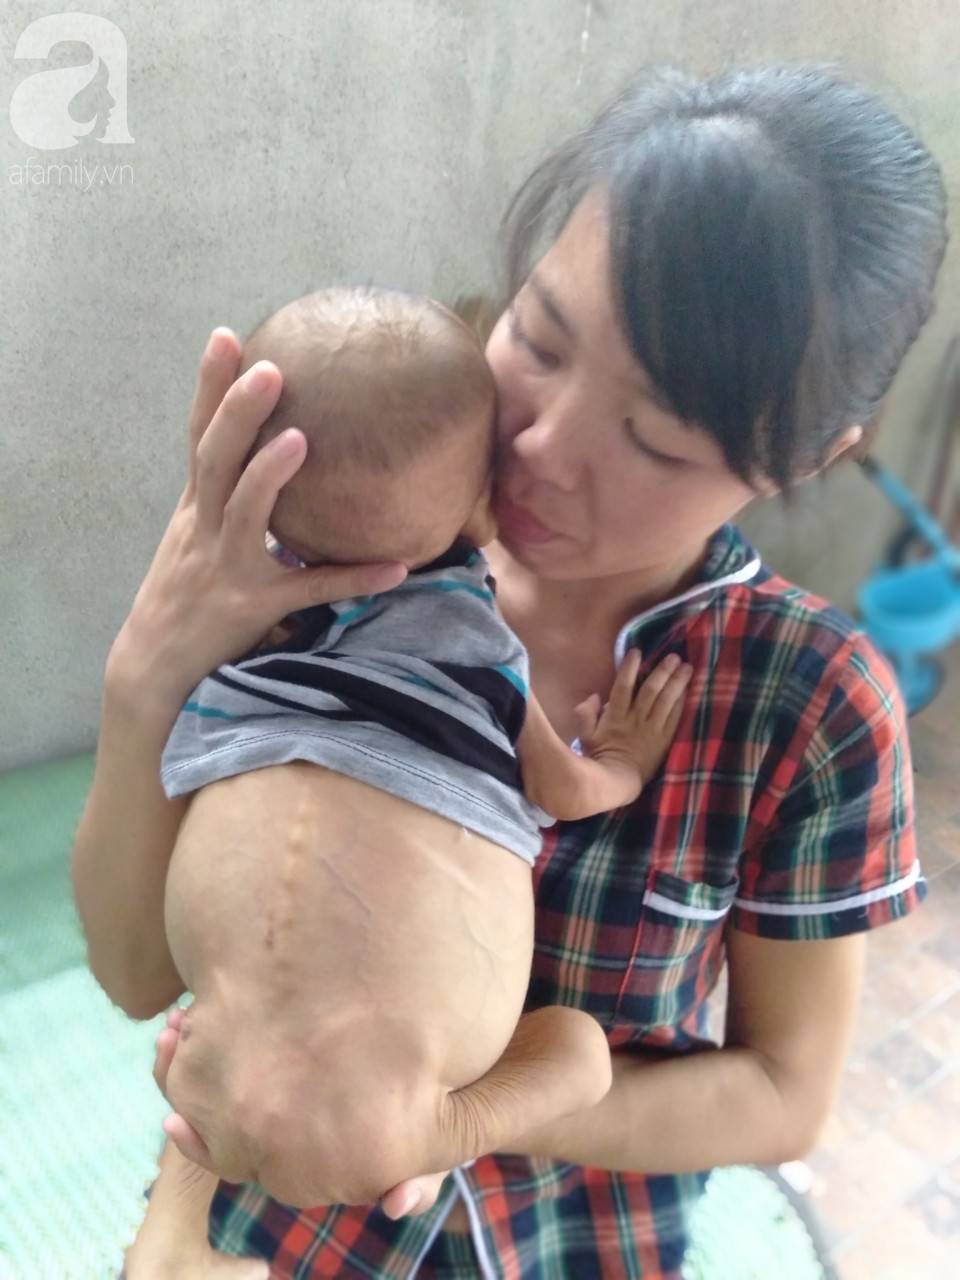 Sự sống mong manh của bé trai 1 tuổi, chỉ nặng 6kg, bụng phình to như cái trống mà mẹ nghèo không tiền chữa trị-6